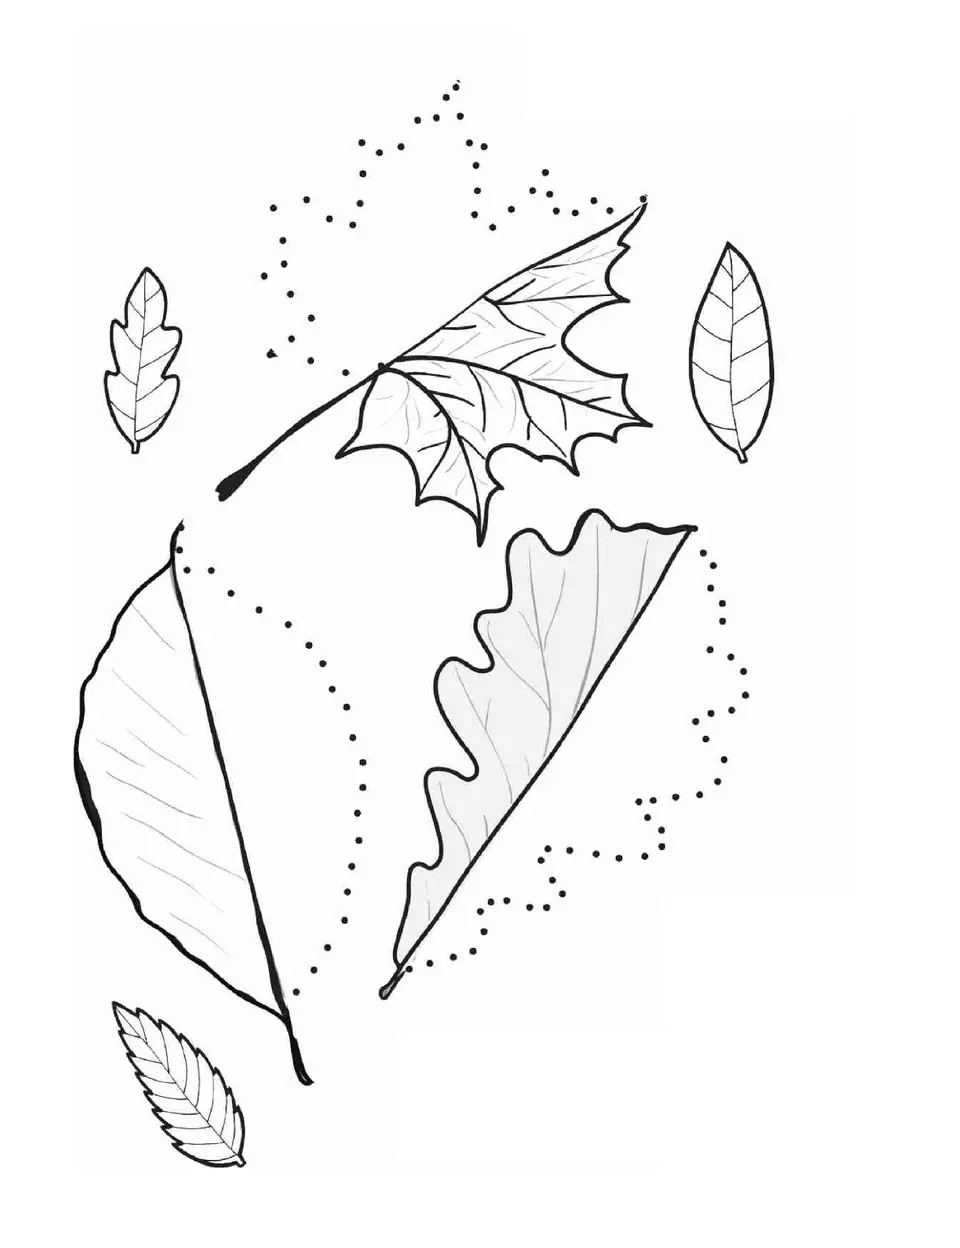 Штриховка осенних листьев